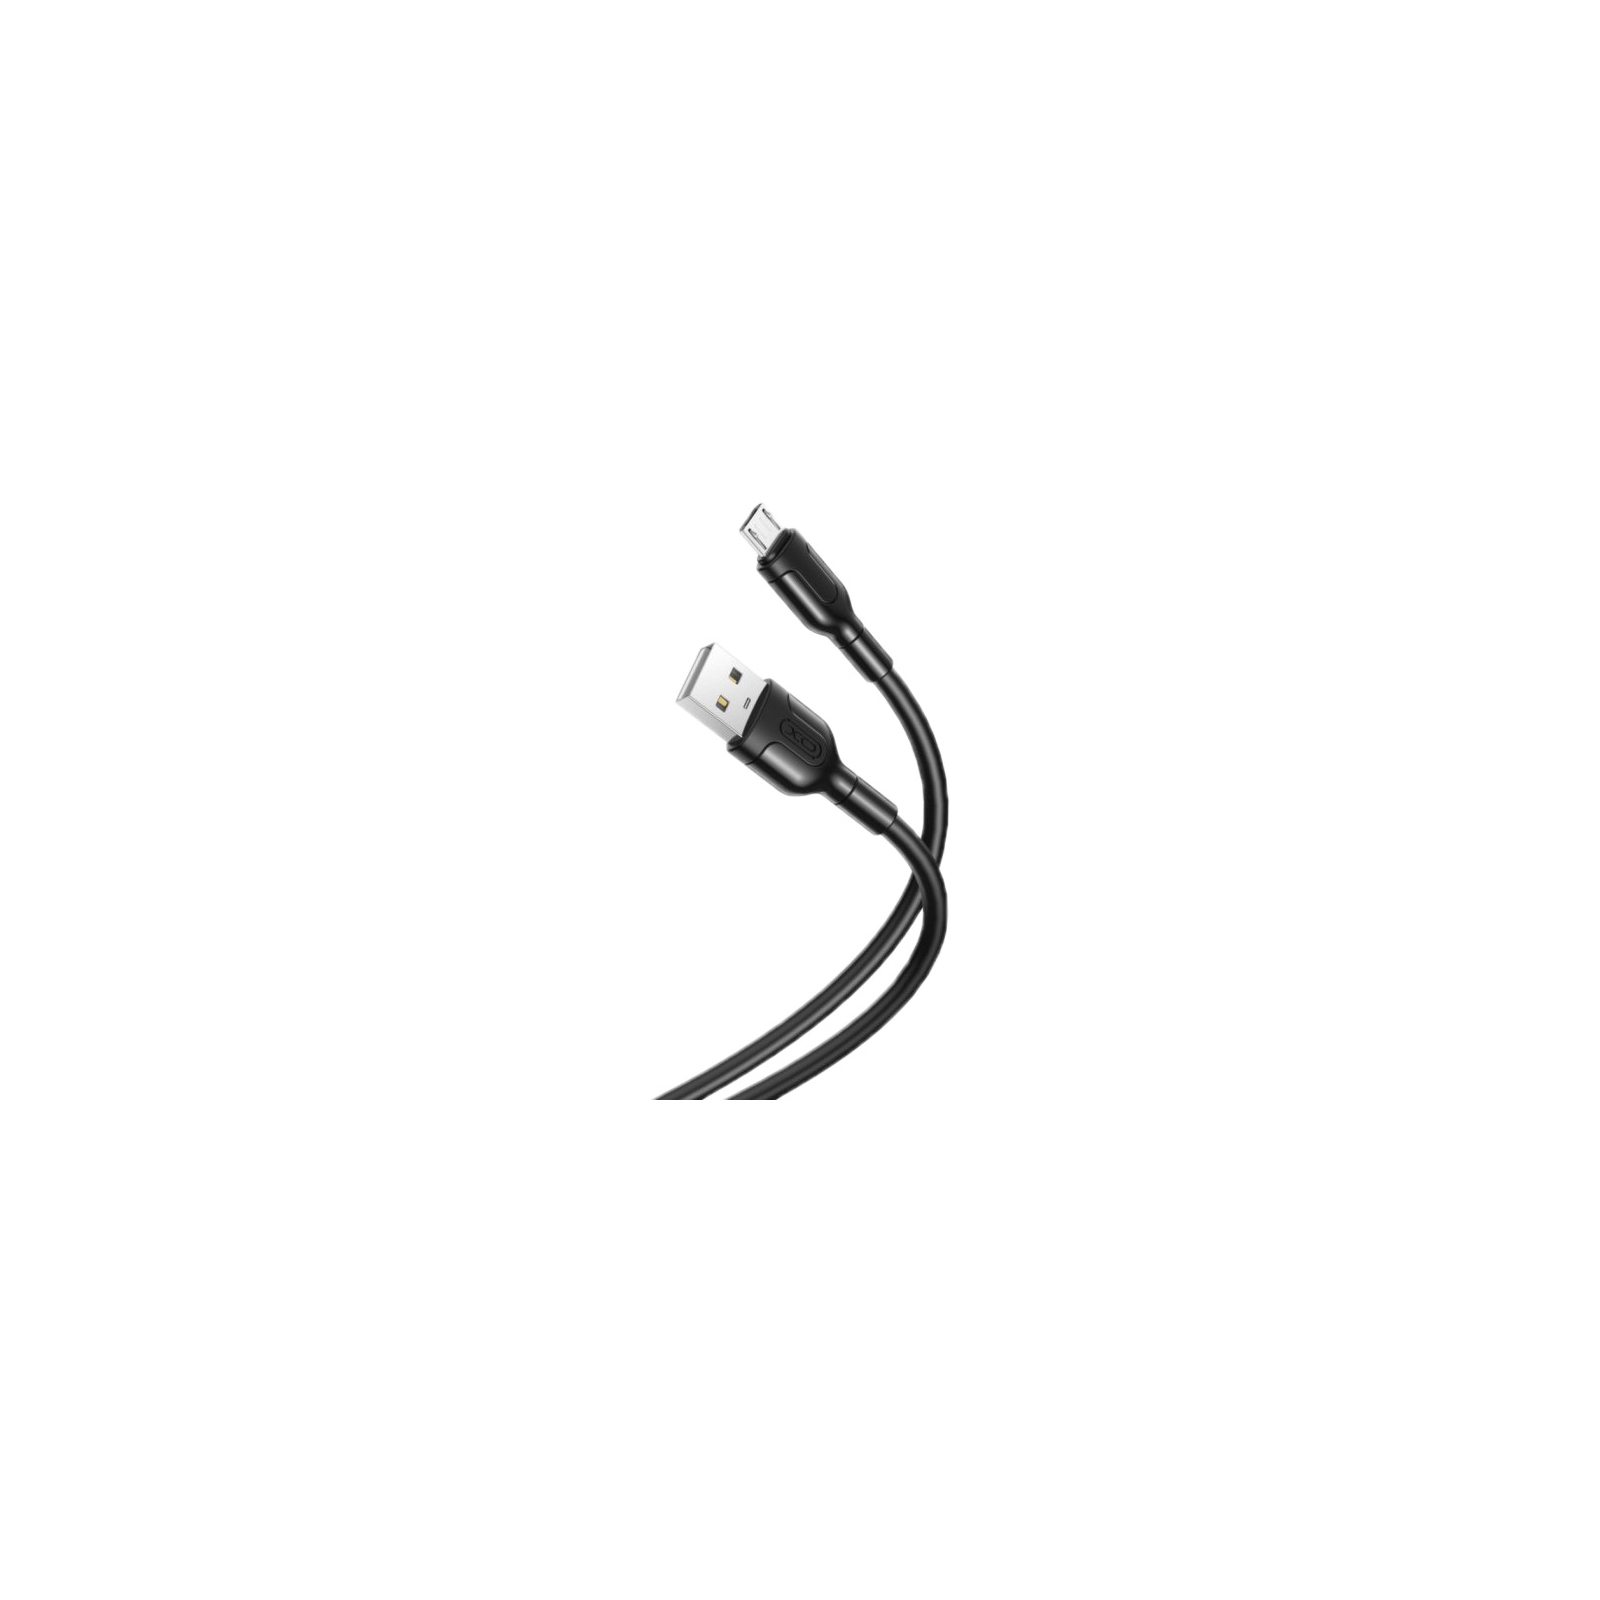 Дата кабель USB 2.0 AM to Micro 5P 1.0m NB212 2.1A Black XO (XO-NB212m-BK)